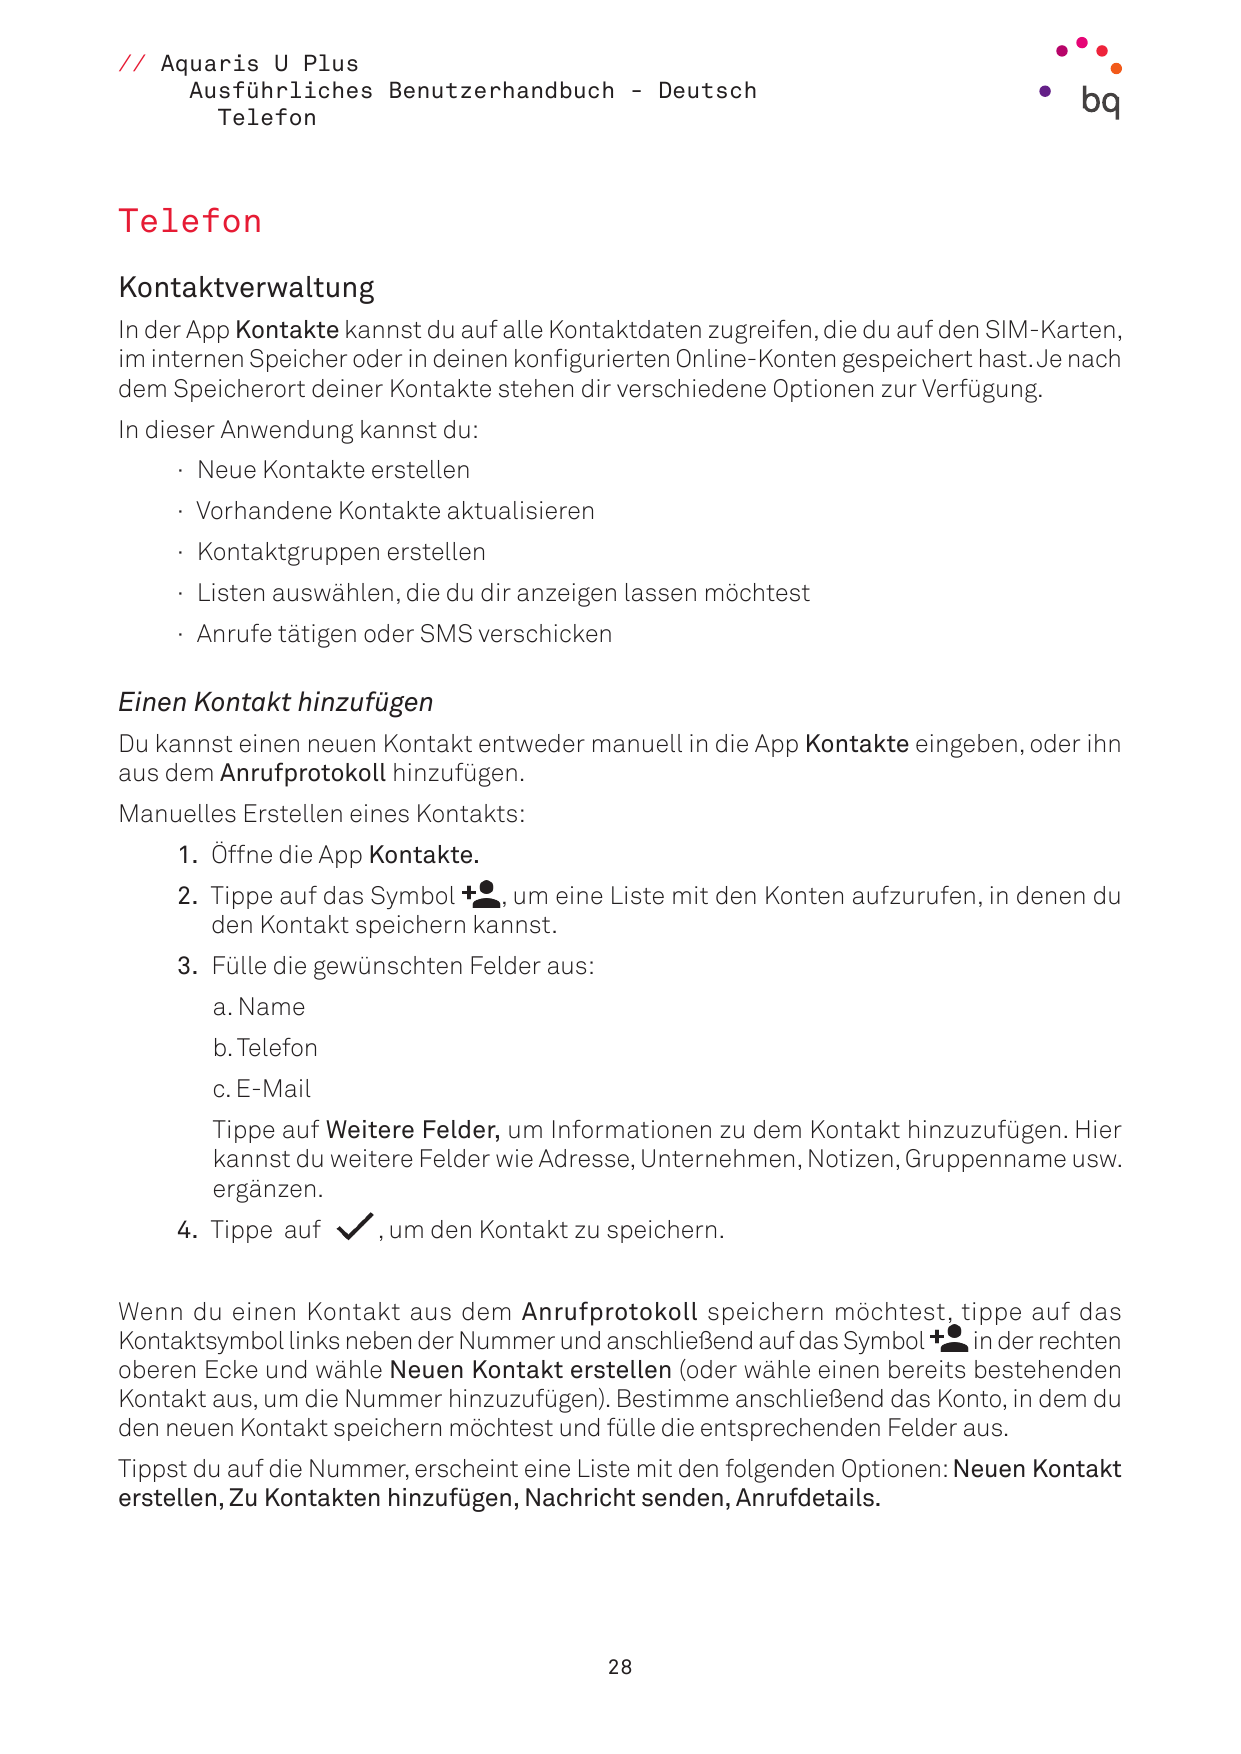 // Aquaris U PlusAusführliches Benutzerhandbuch - DeutschTelefonTelefonKontaktverwaltungIn der App Kontakte kannst du auf alle K